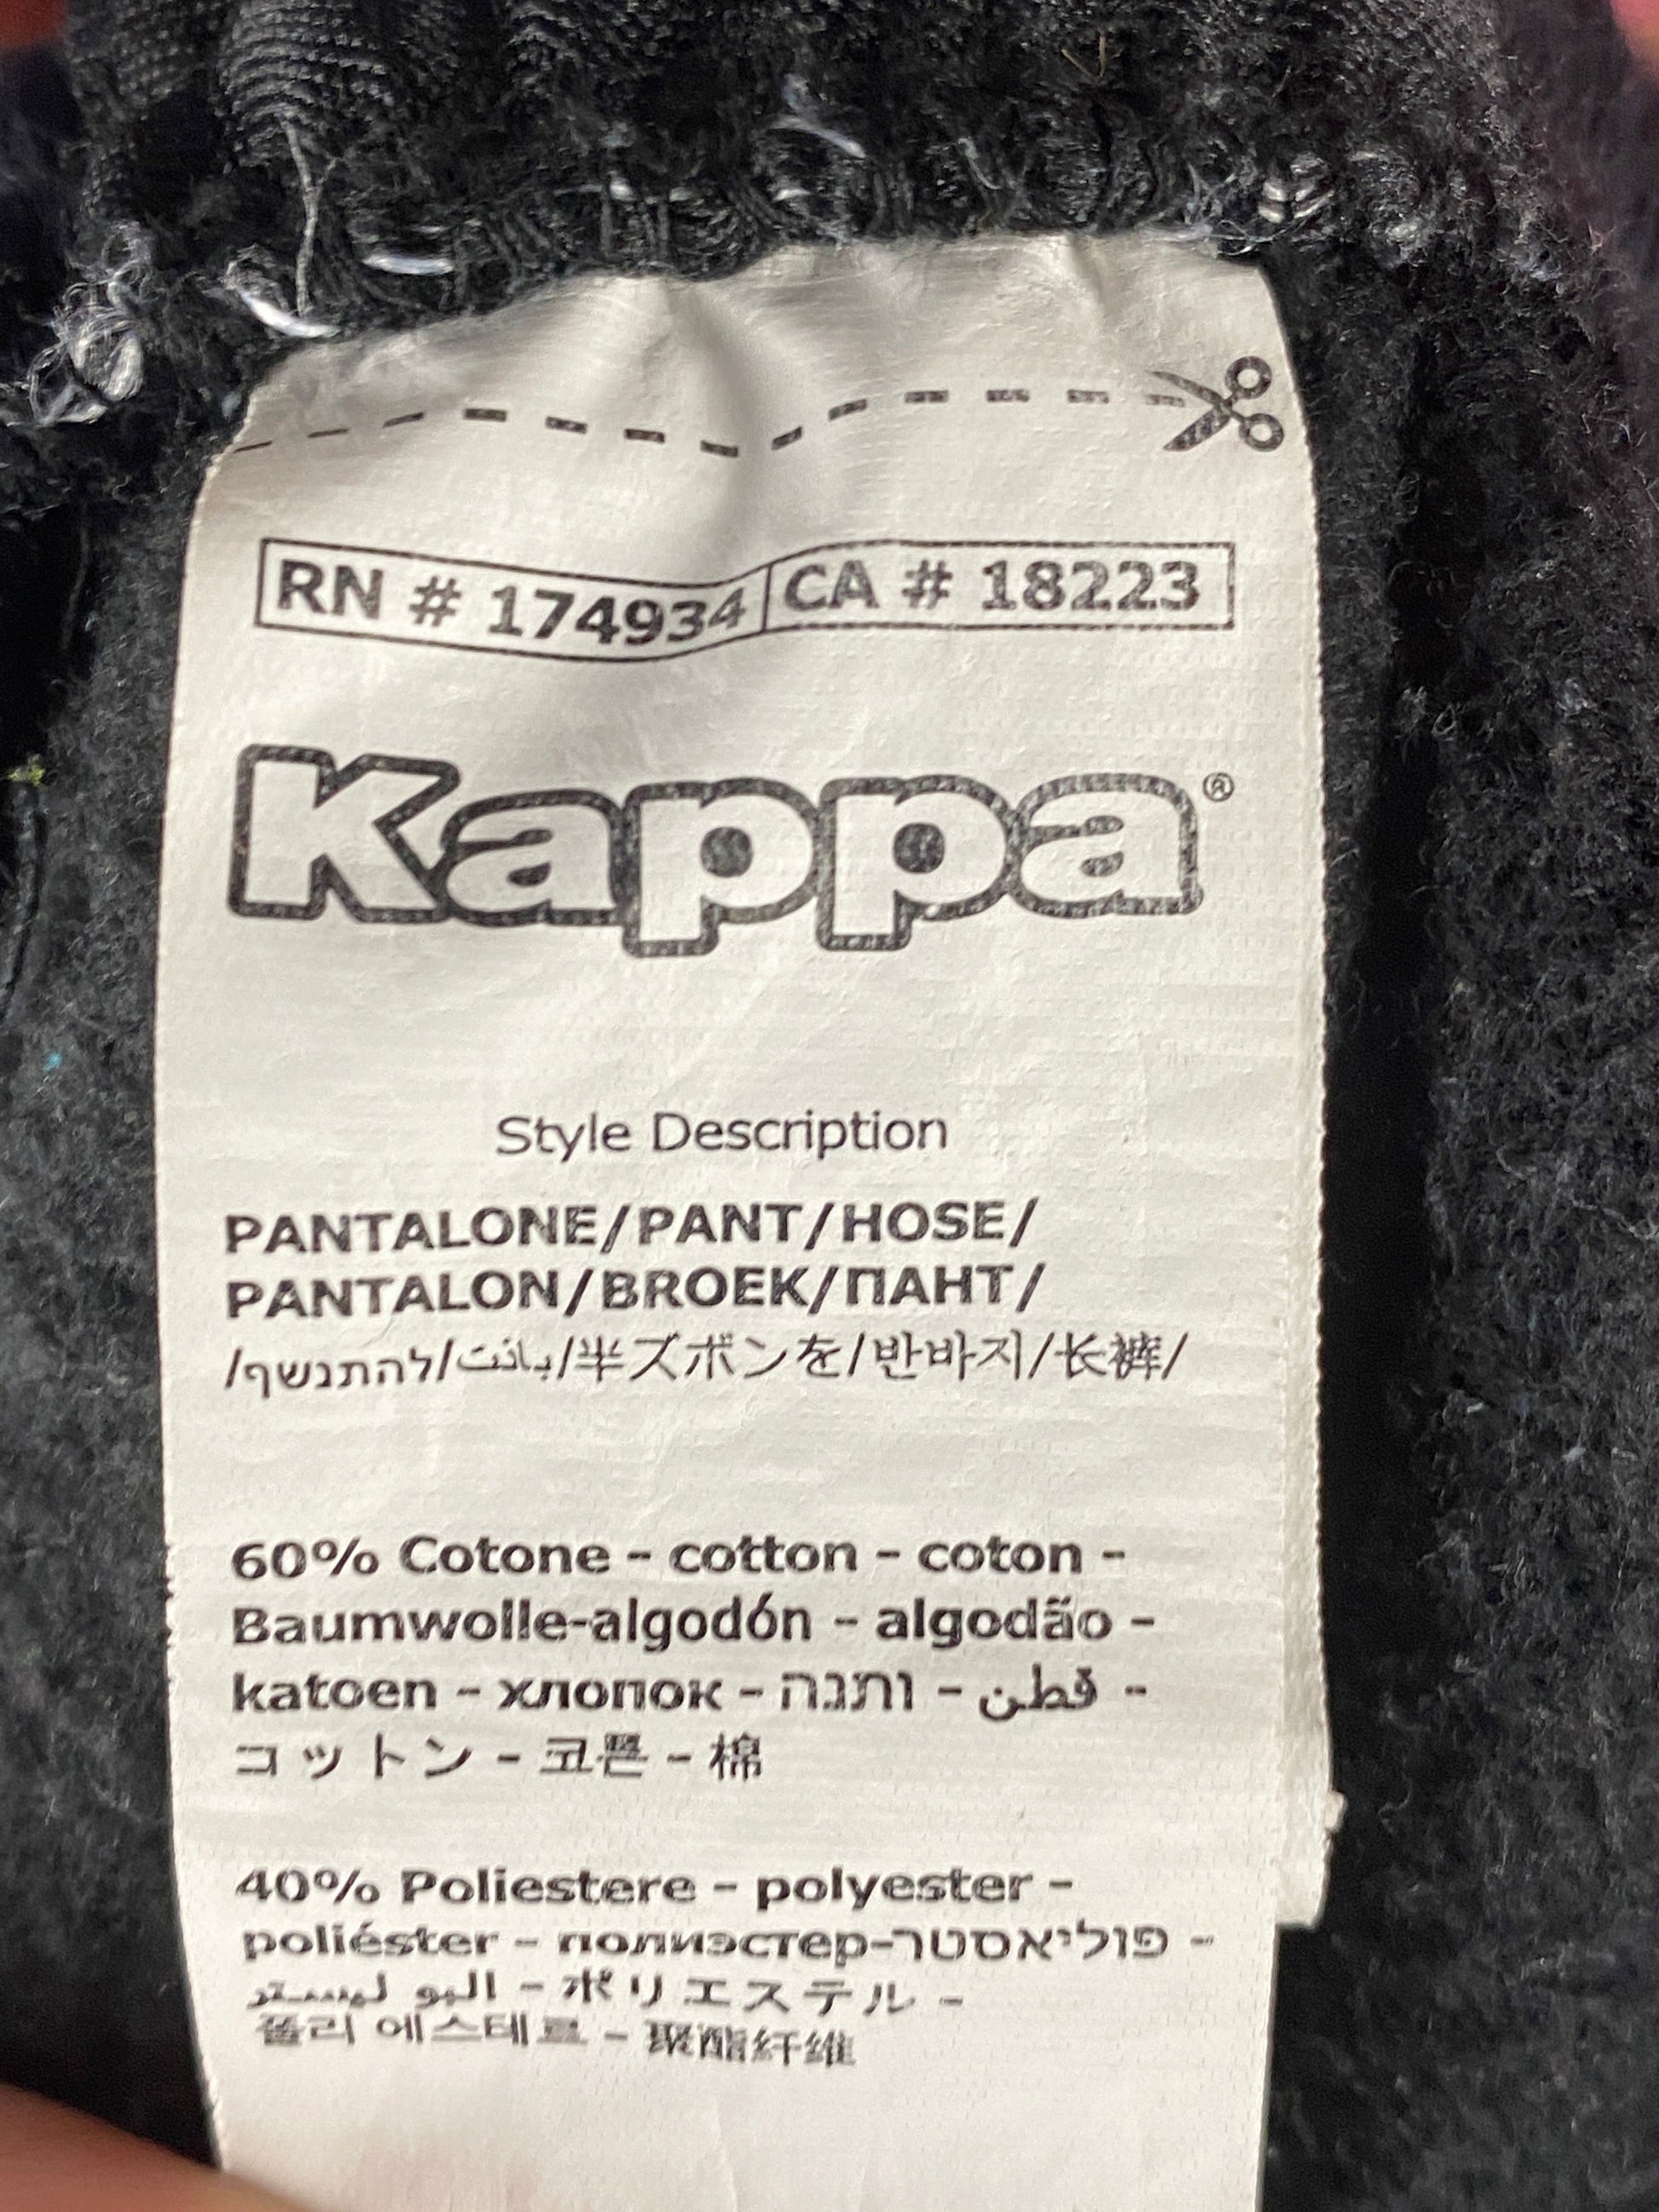 Kappa X Disney Men's Sweatpants - Large Black Cotton Blend